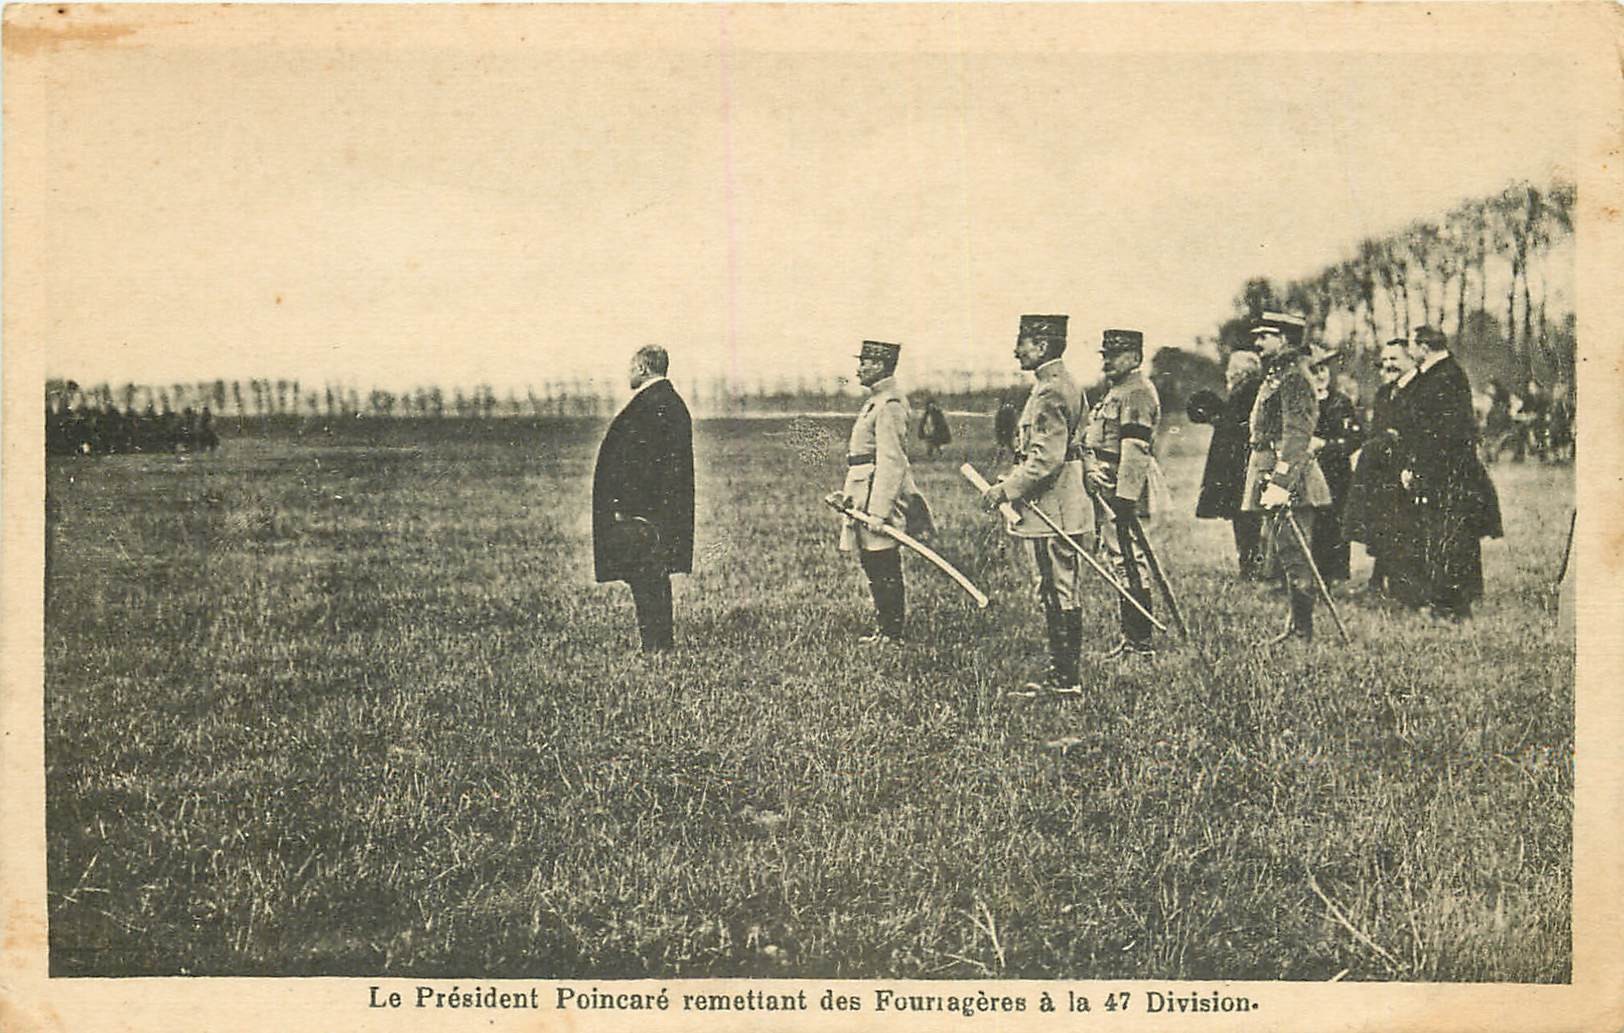 WW MILITAIRES. Le Président Poincaré remettant des Fourragères à la 47 Division